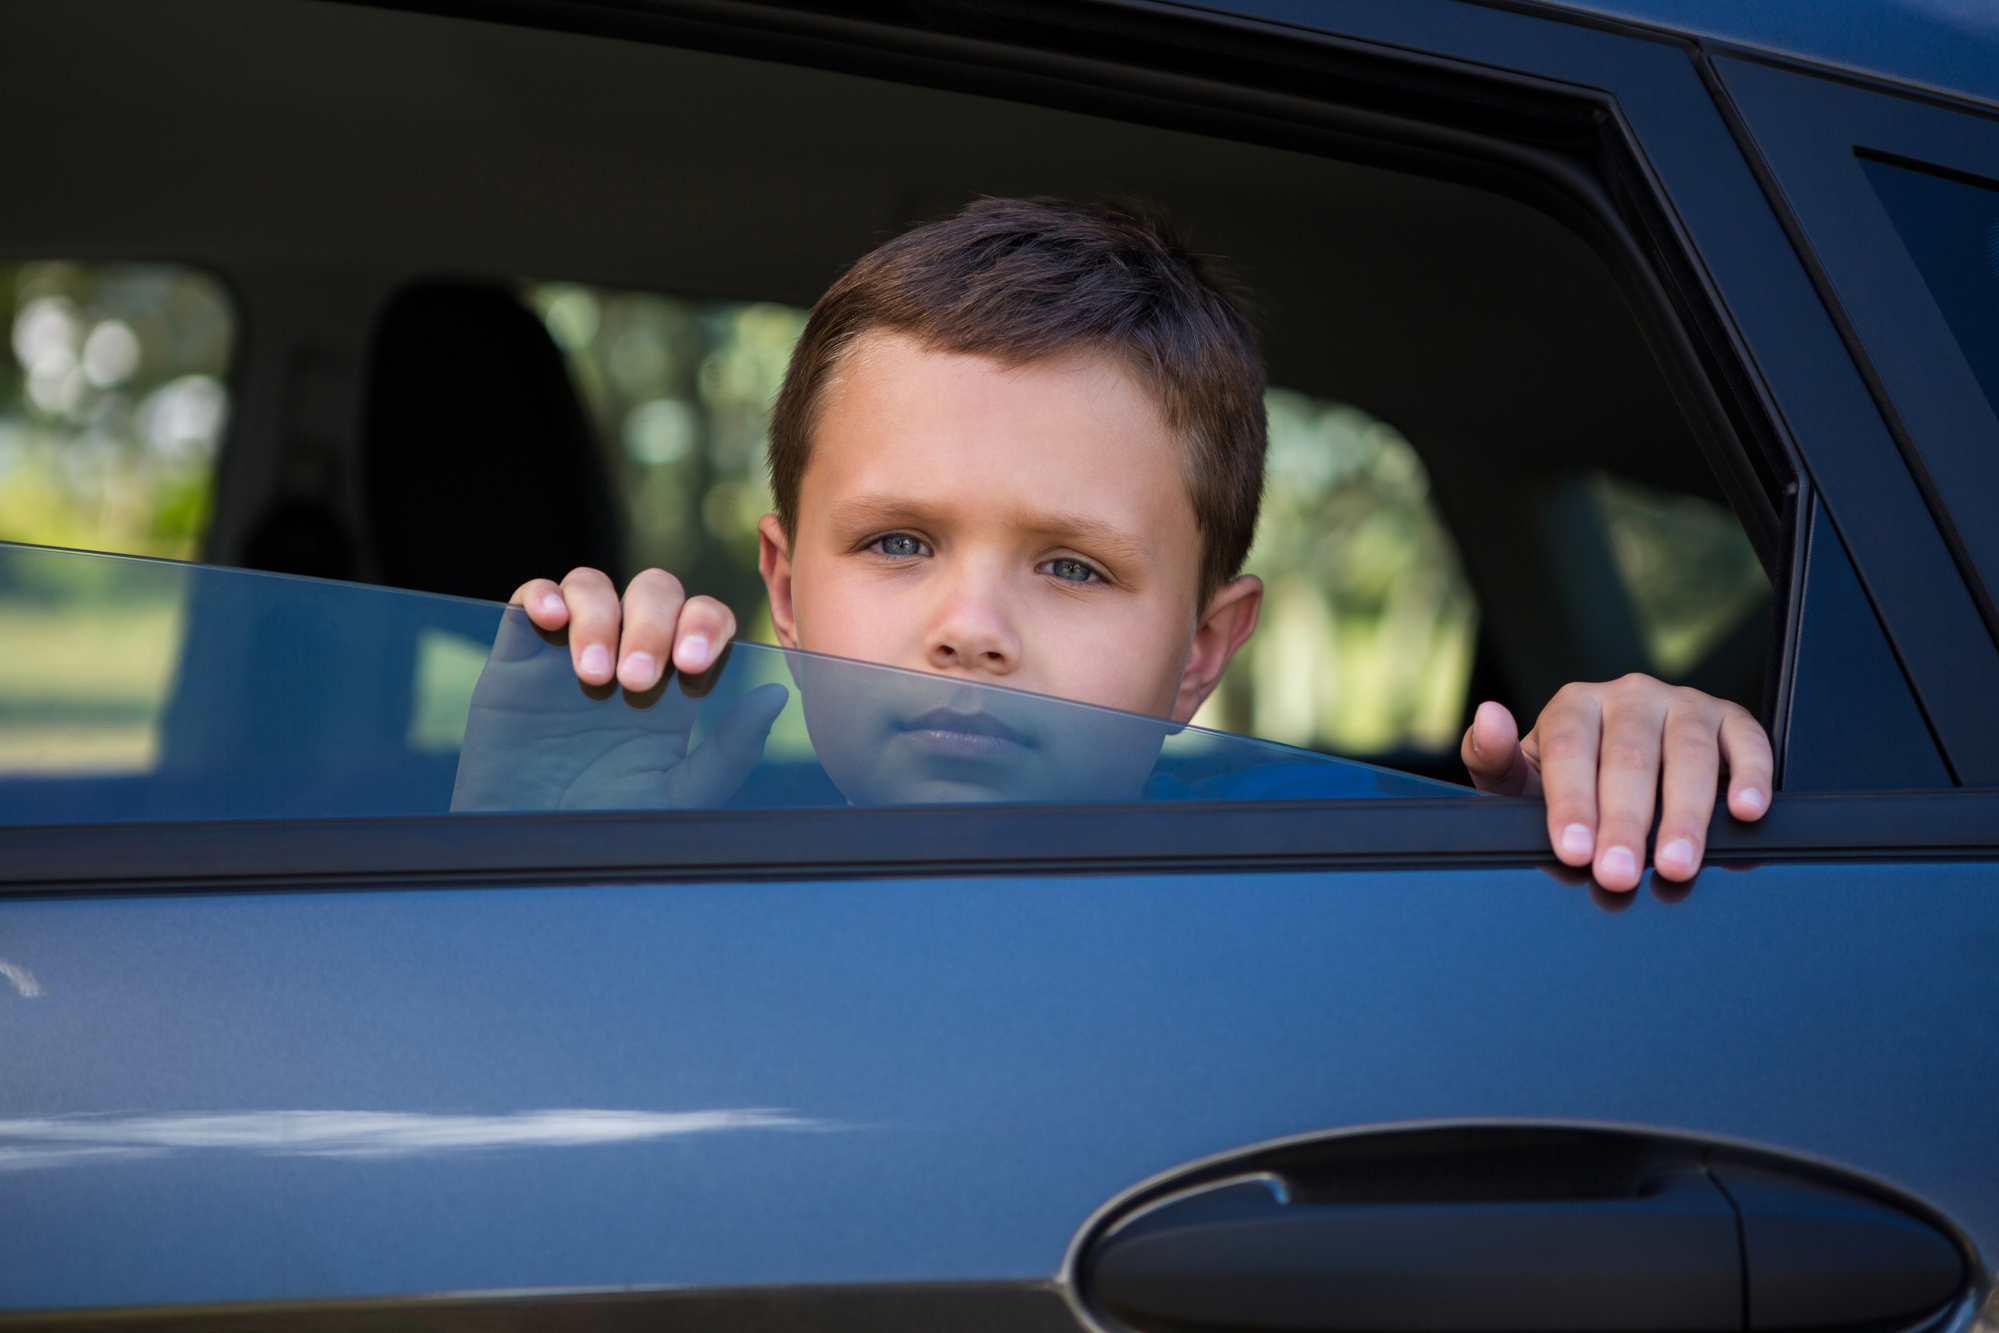 Даешь мальчику в машине. Дети в окне машины. Мальчик в окне в машине. Дети наблюдают за автомобилем. Мальчик за окном в машине.